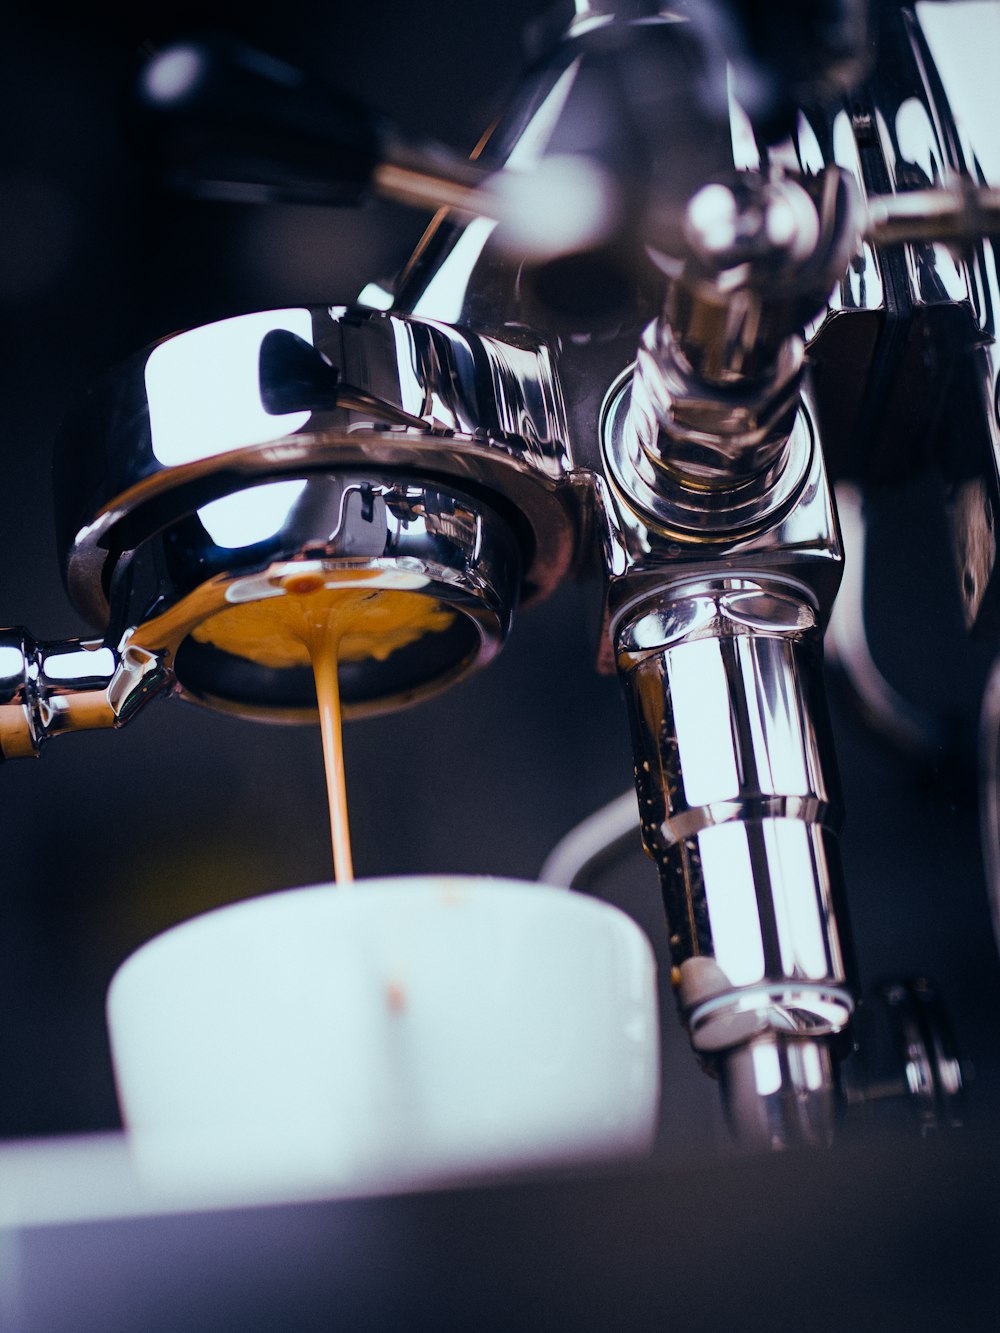 Edelstahl-Espressomaschine gießt auf Tasse